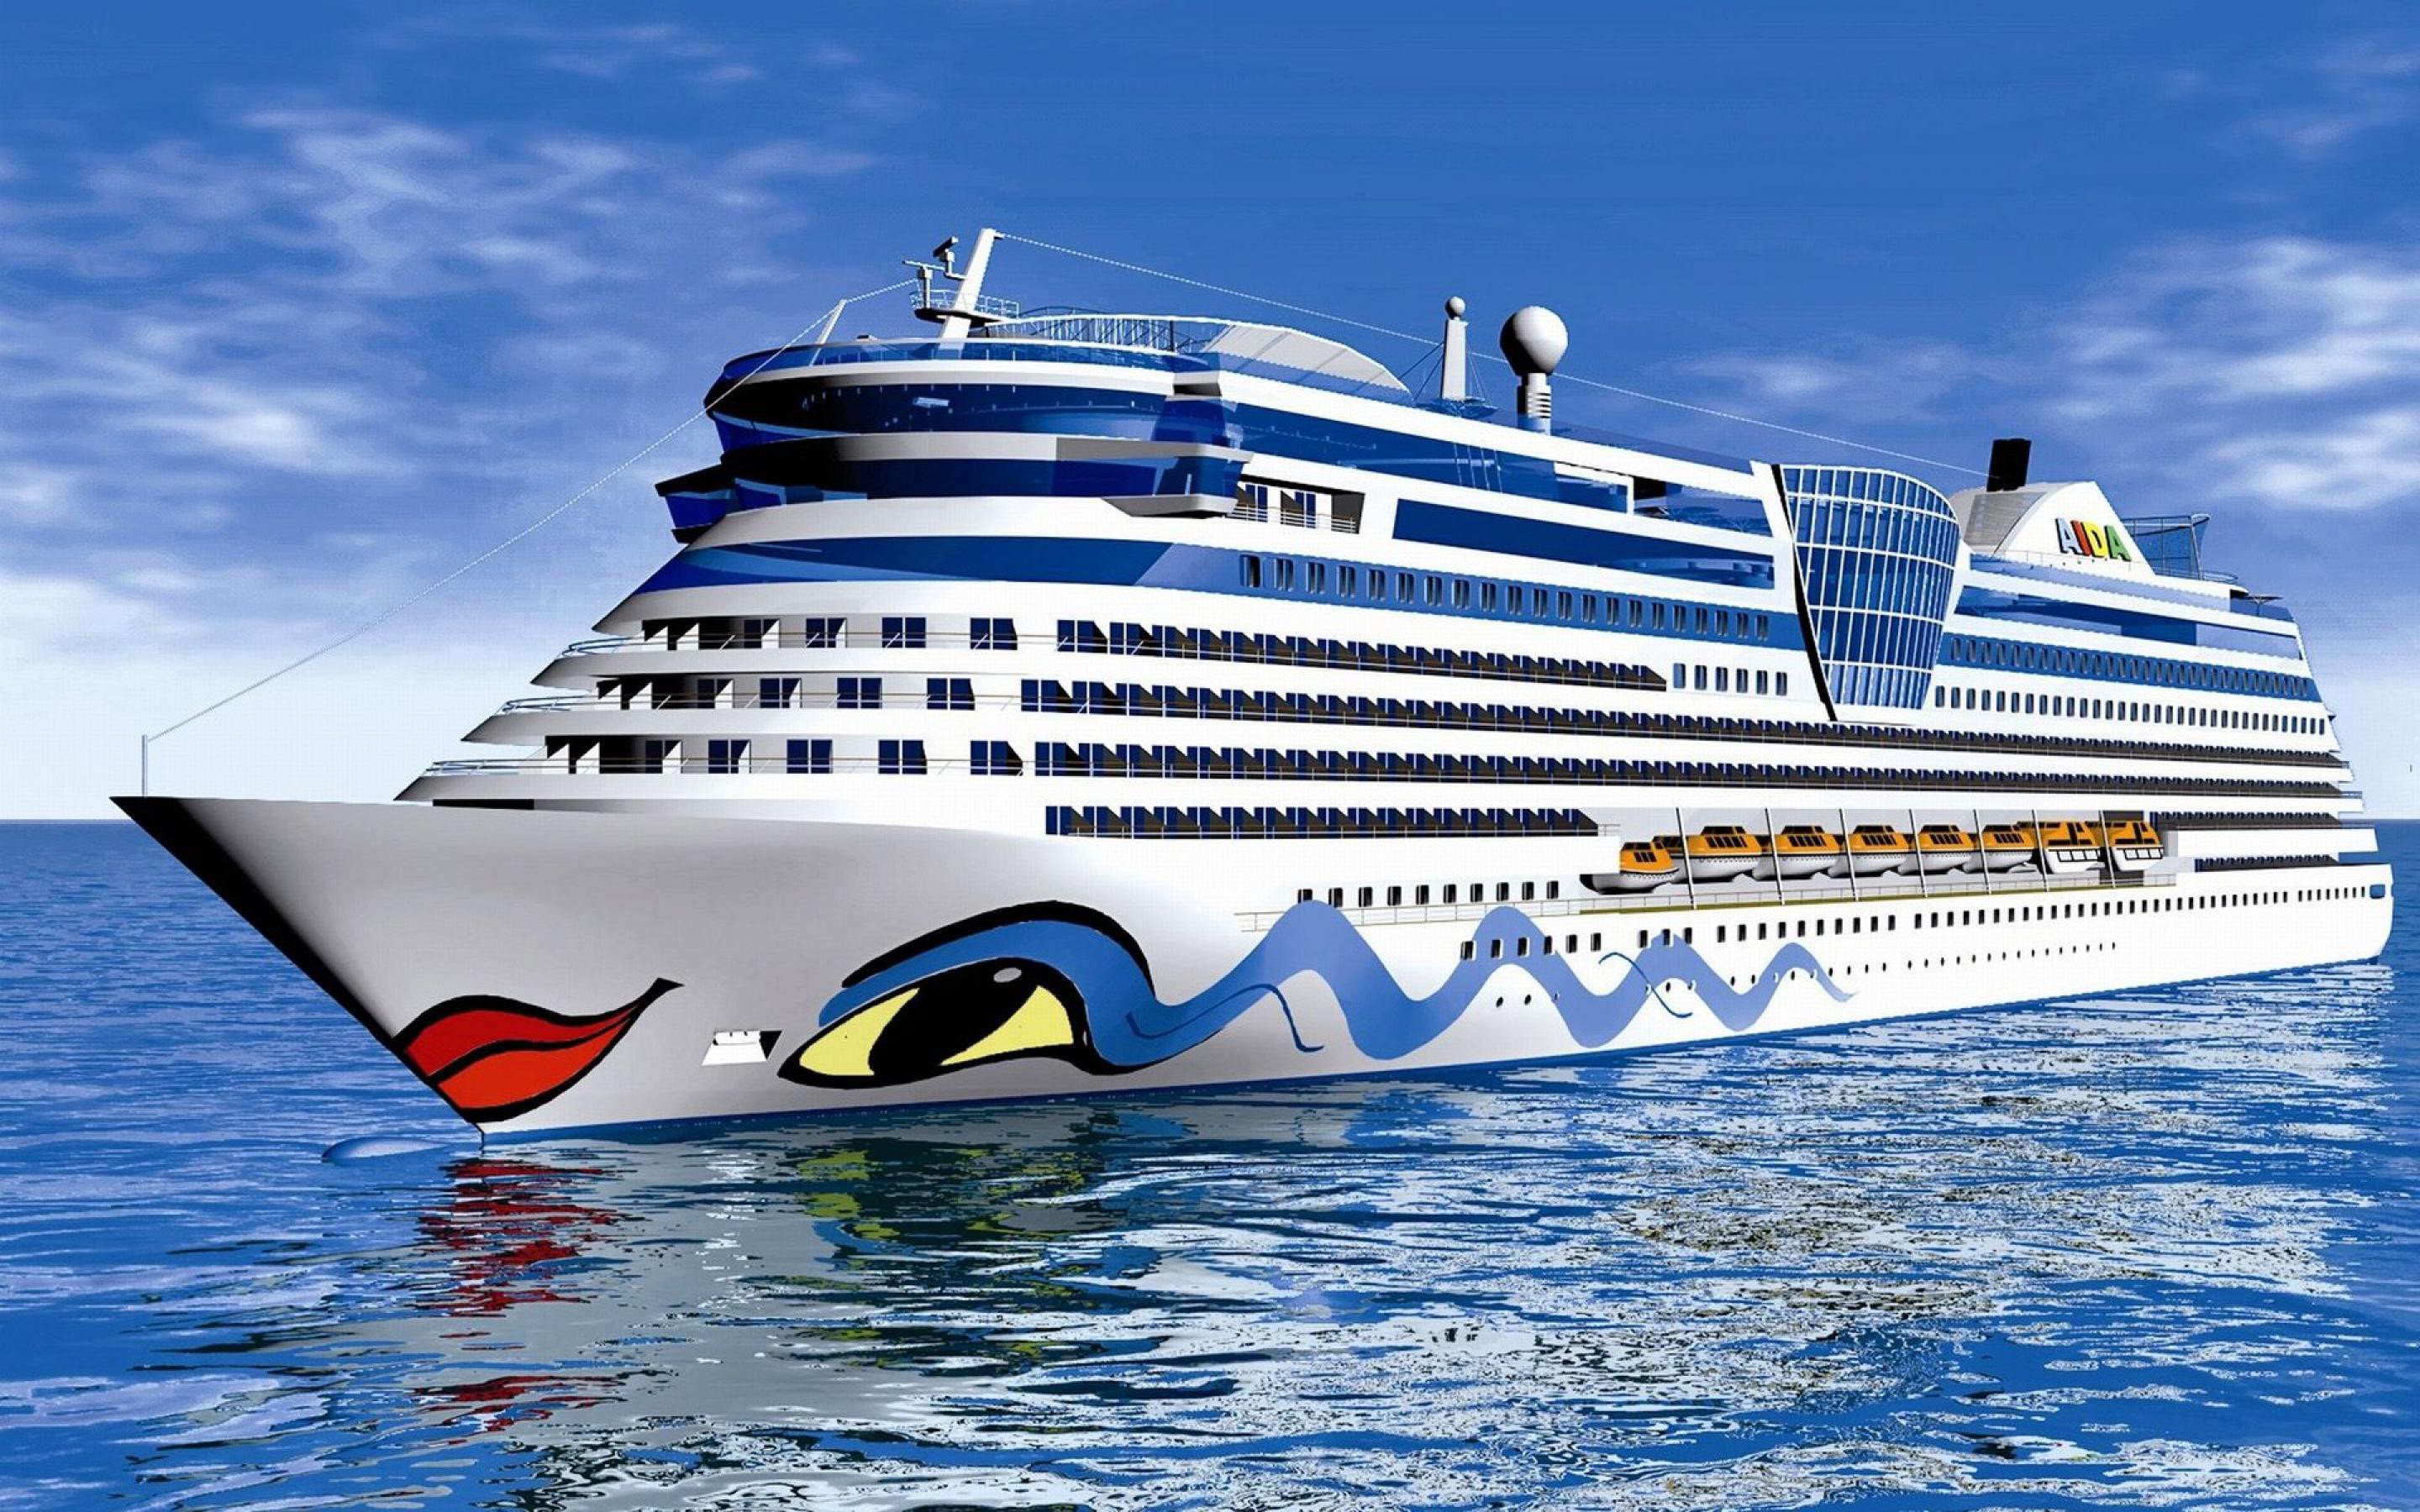 2000 Free Cruise Ship  Cruise Images  Pixabay